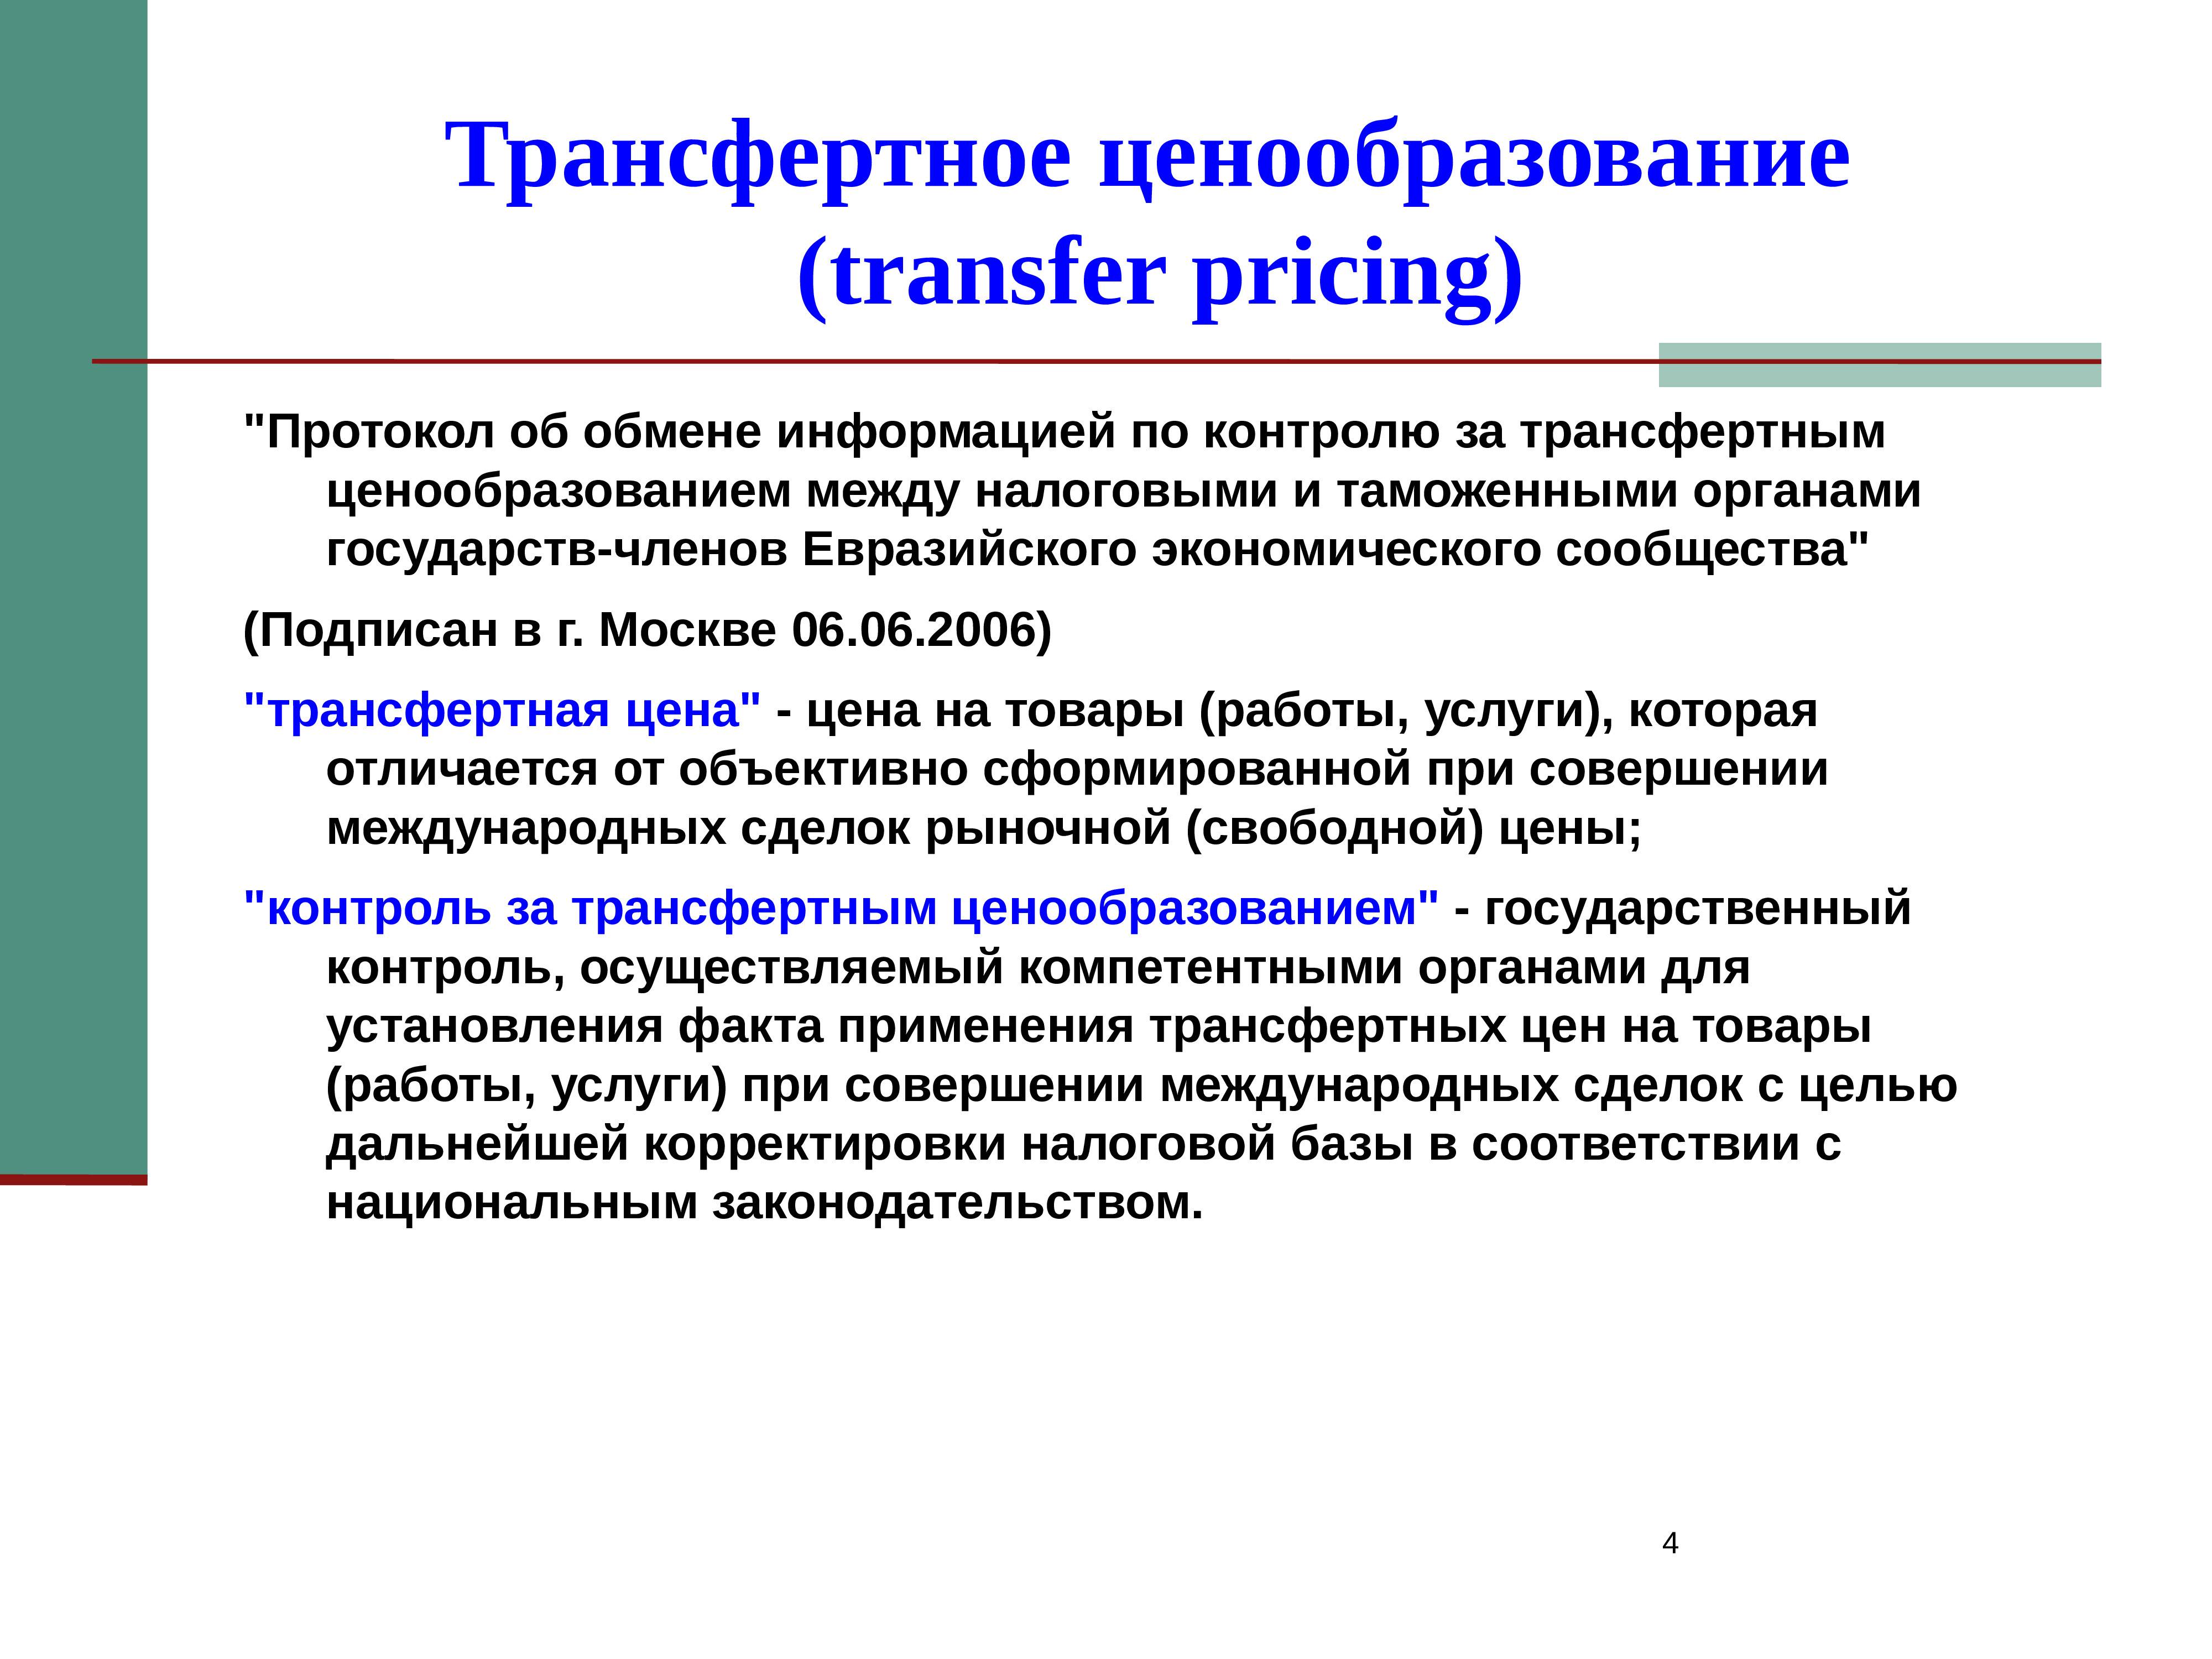 Трансферное ценообразование. Транспортное ценообразование. Трансфертное ценообразование. Методы трансфертного ценообразования. Методика трансфертного ценообразования.